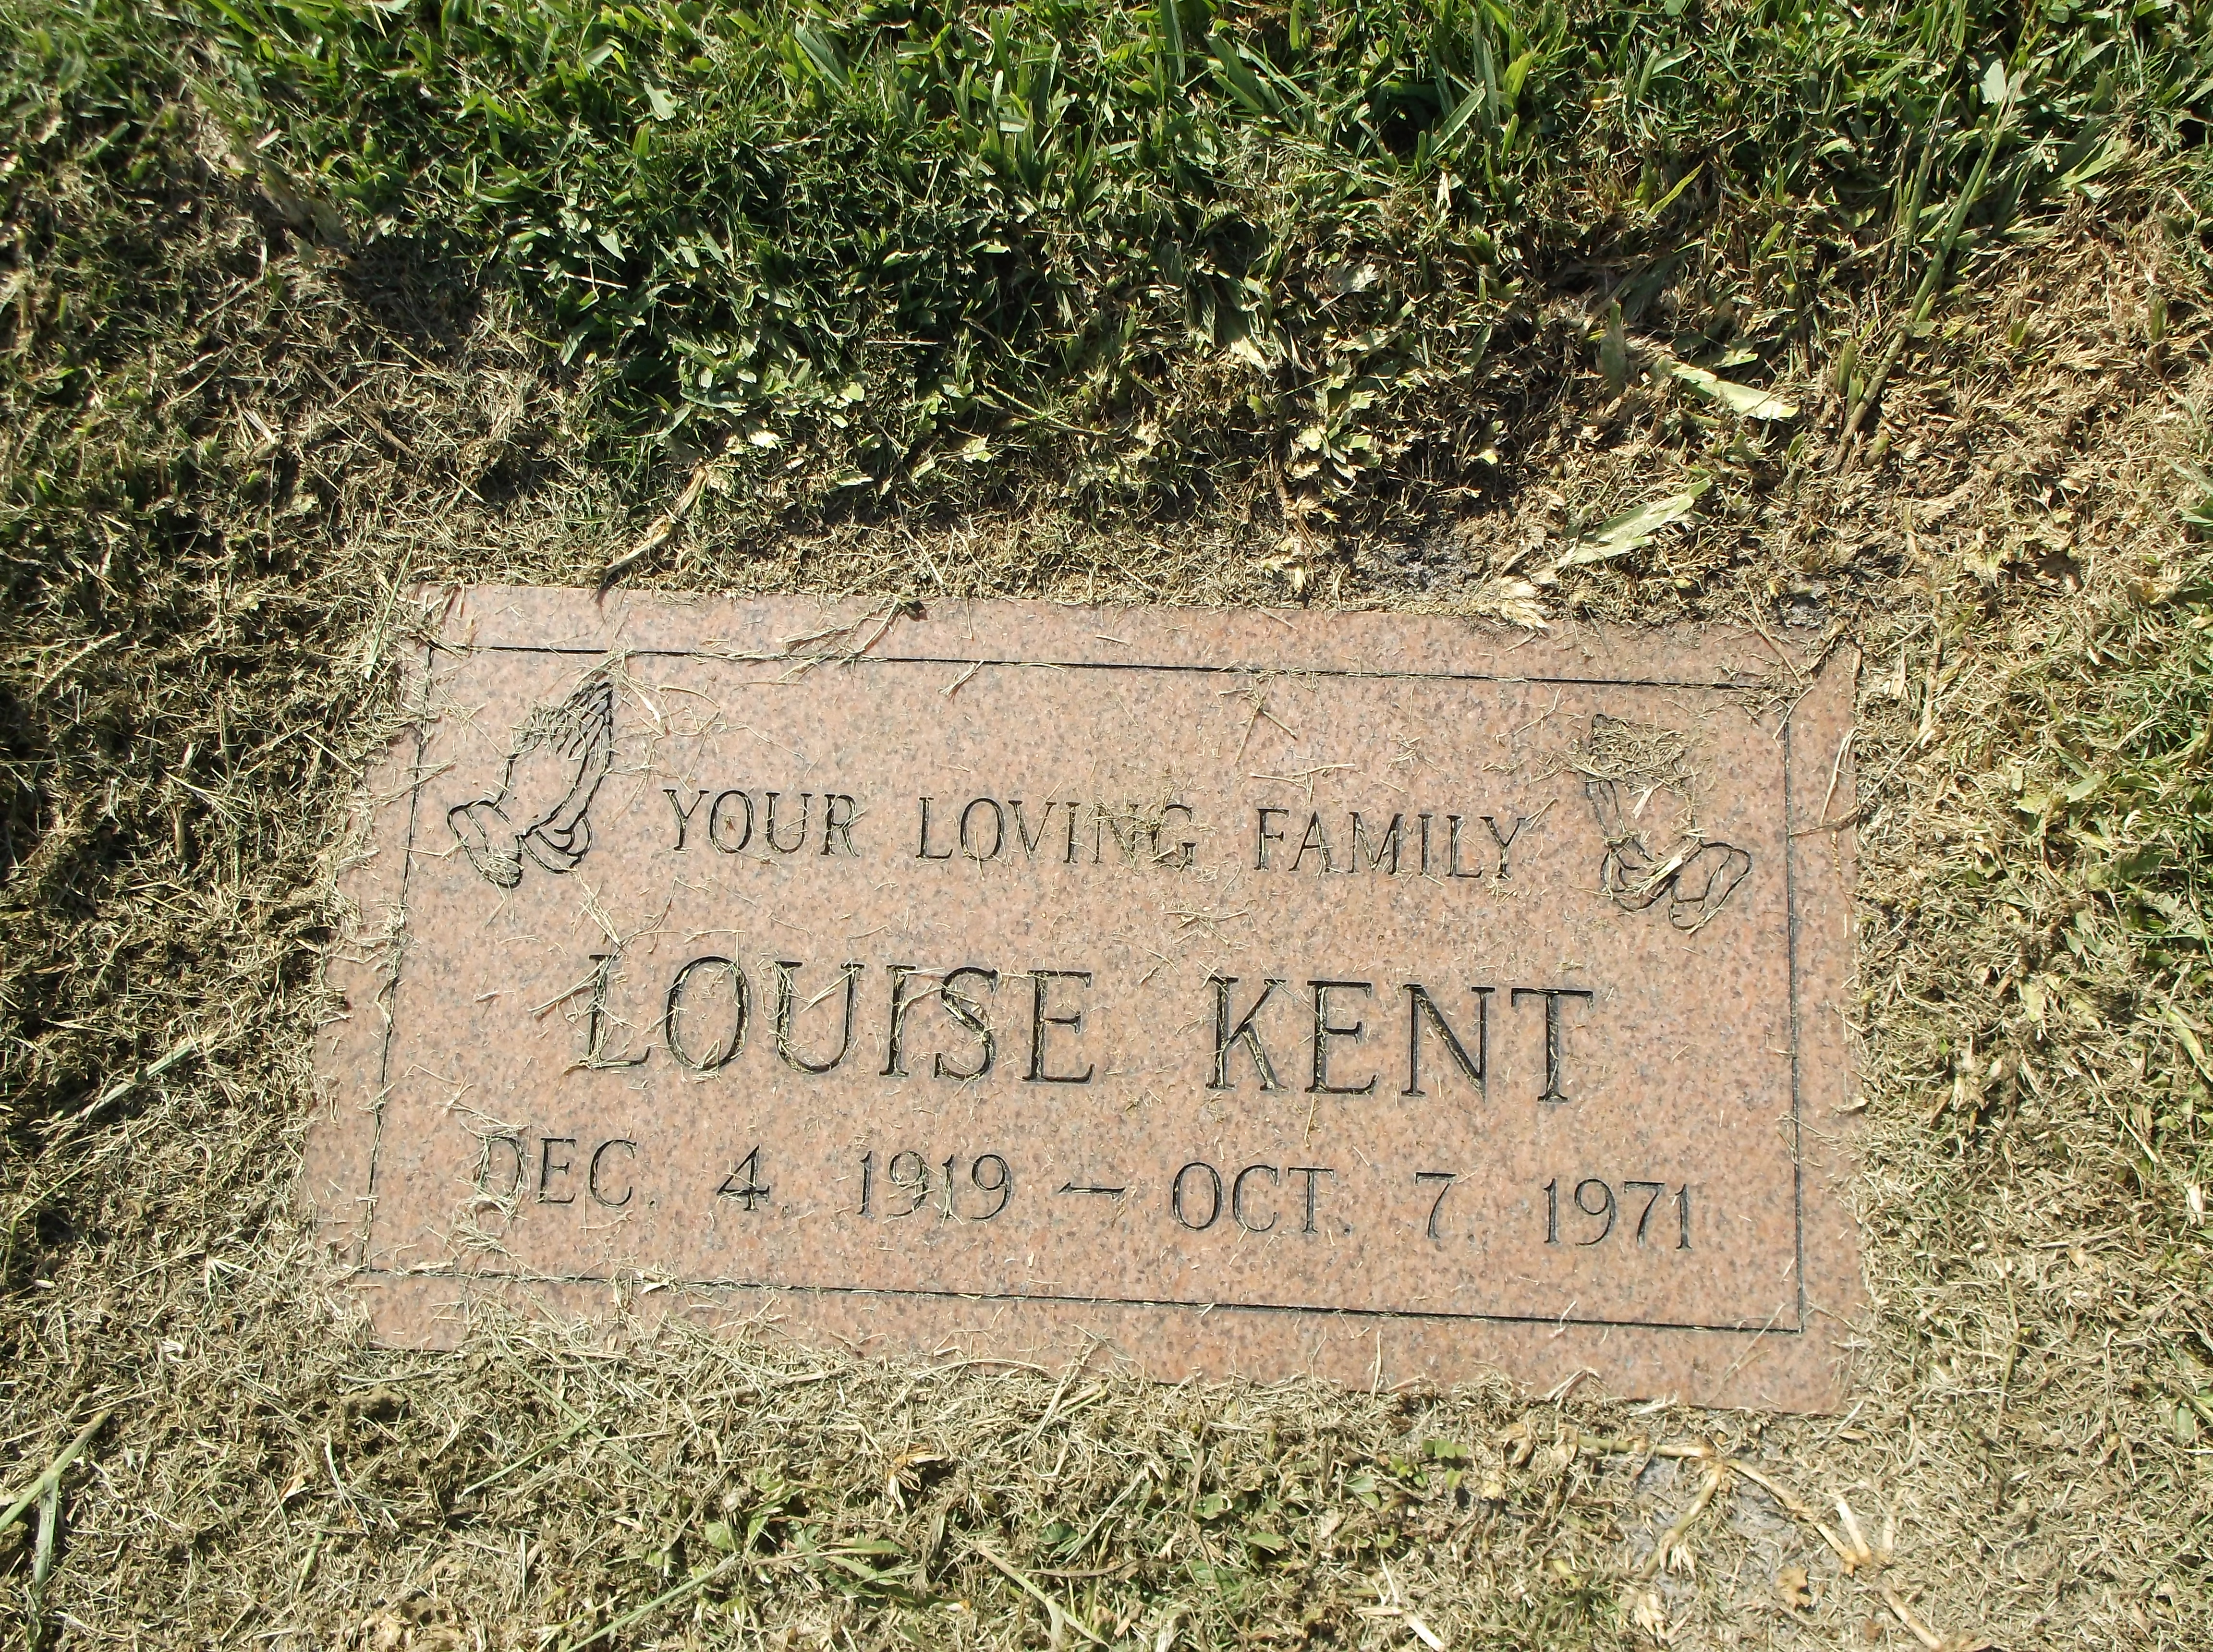 Louise Kent